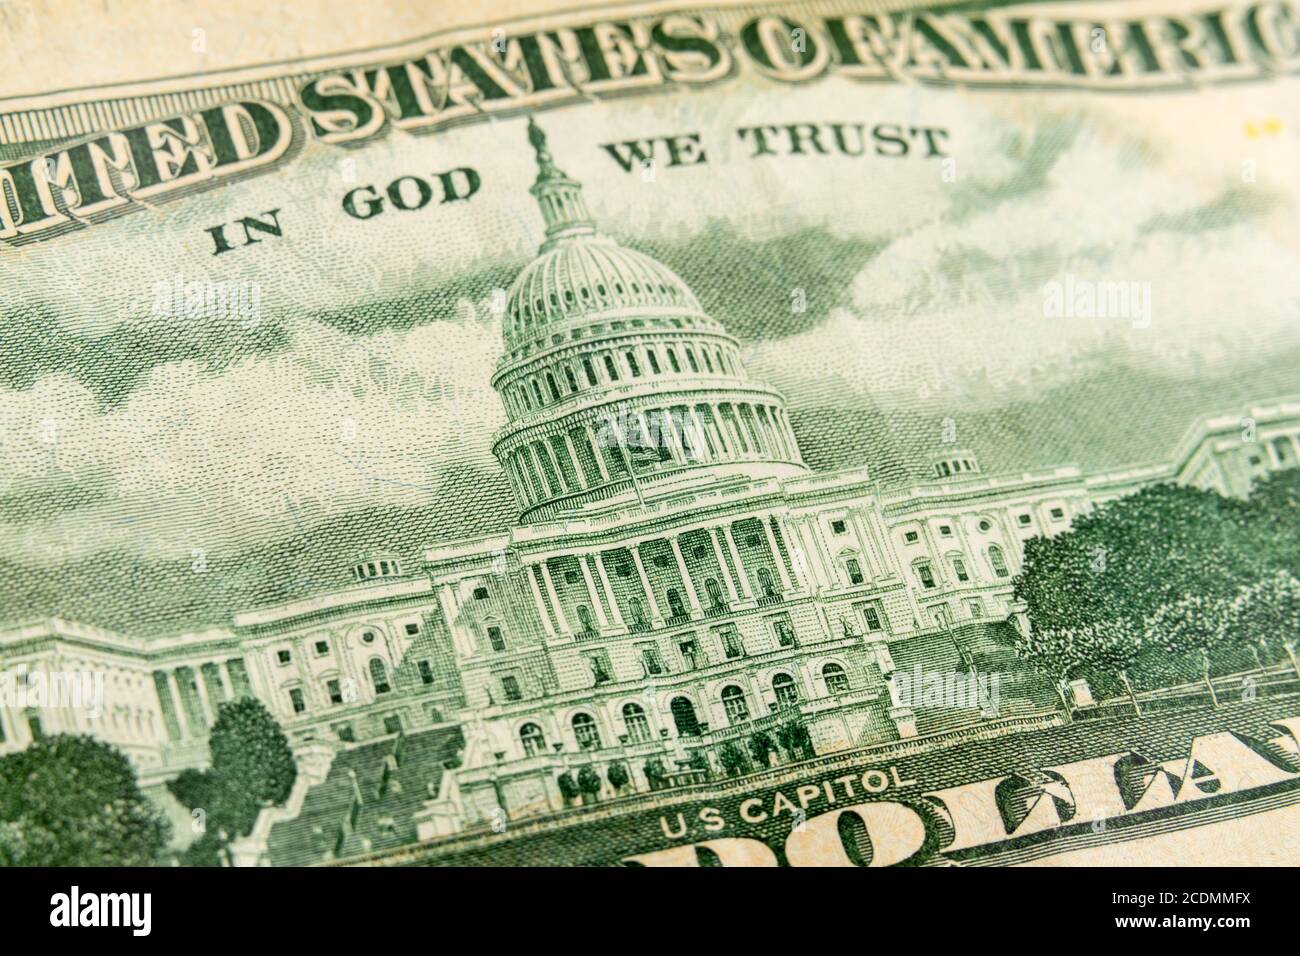 Makrofoto des US-Kapitolgebäudes auf der Rückseite eines 50-Dollar-Geldscheins. Stockfoto